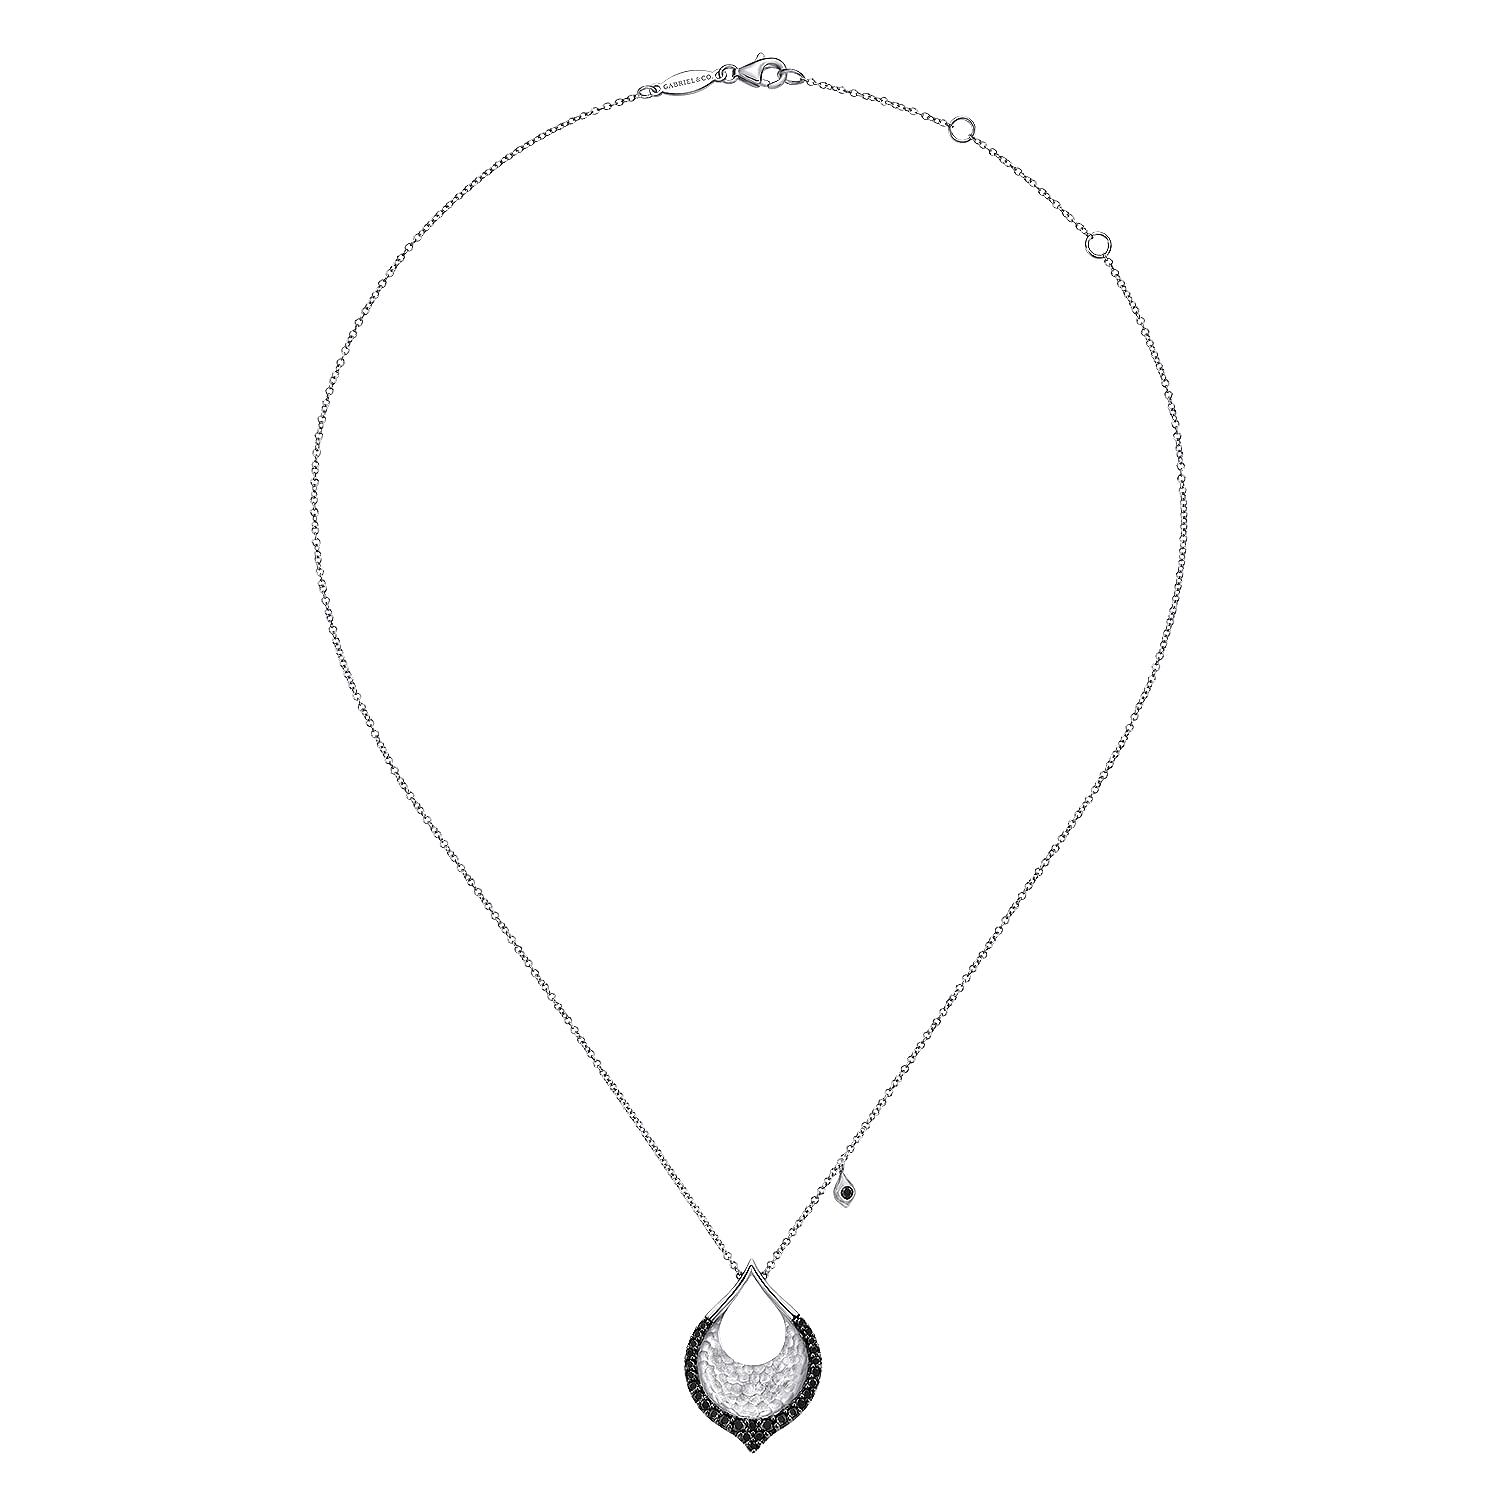 Hammered-925-Sterling-Silver-Black-Spinel-Teardrop-Pendant-Necklace2